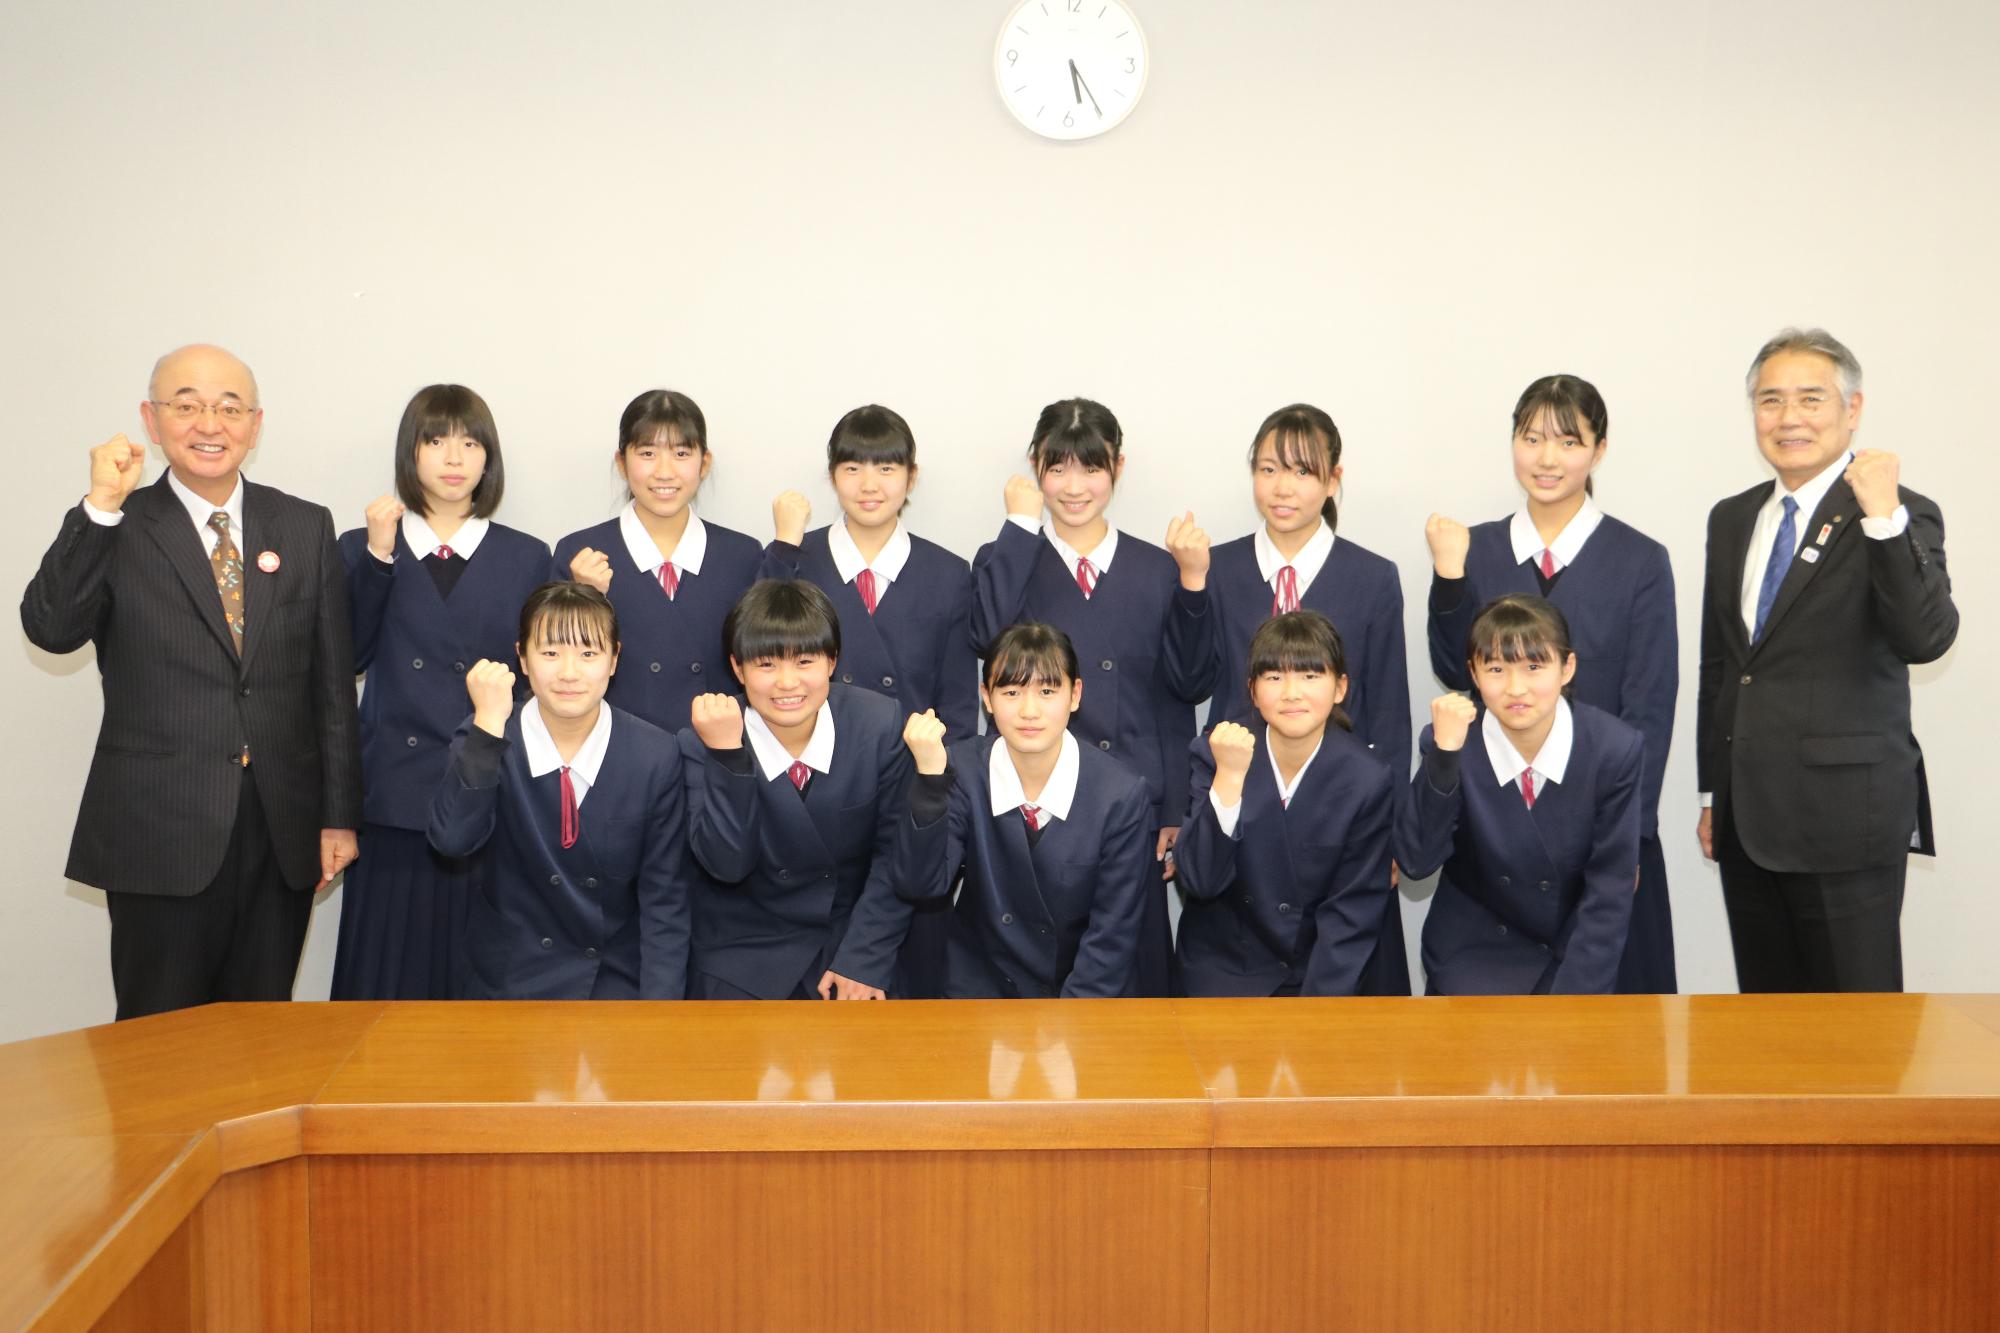 丹南中学校女子バレー部の生徒11名と、酒井市長と前川教育長が右手でガッツポーズをしている写真